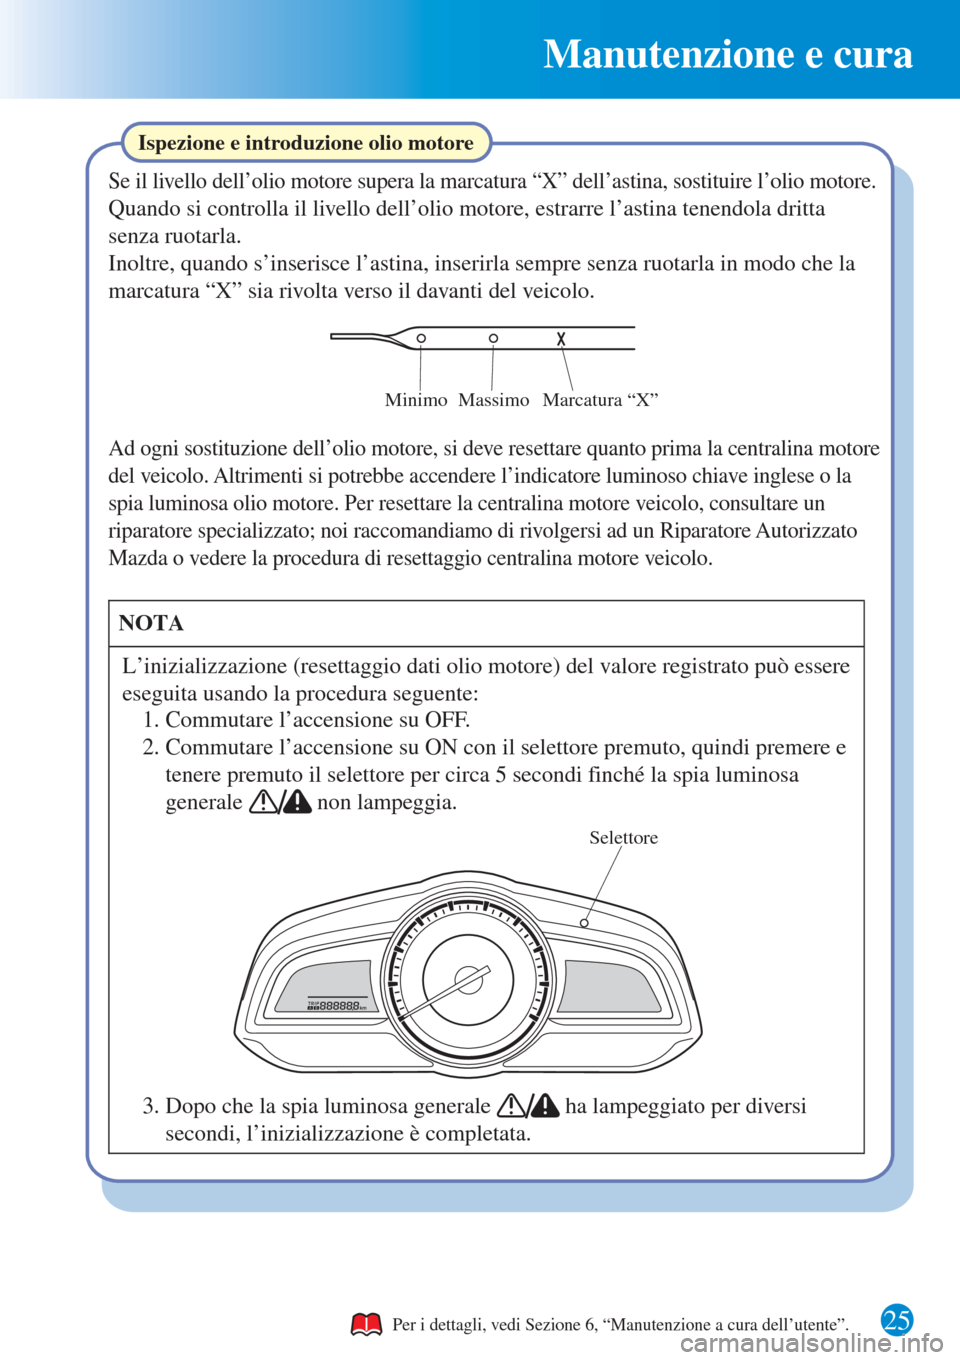 MAZDA MODEL CX-3 2015  Guida Rapida (in Italian) Manutenzione e cura
25
Ispezione e introduzione olio motore
Se il livello dell’olio motore supera la marcatura “X” dell’astina, sostituire l’olio motore.
Quando si controlla il livello dell�